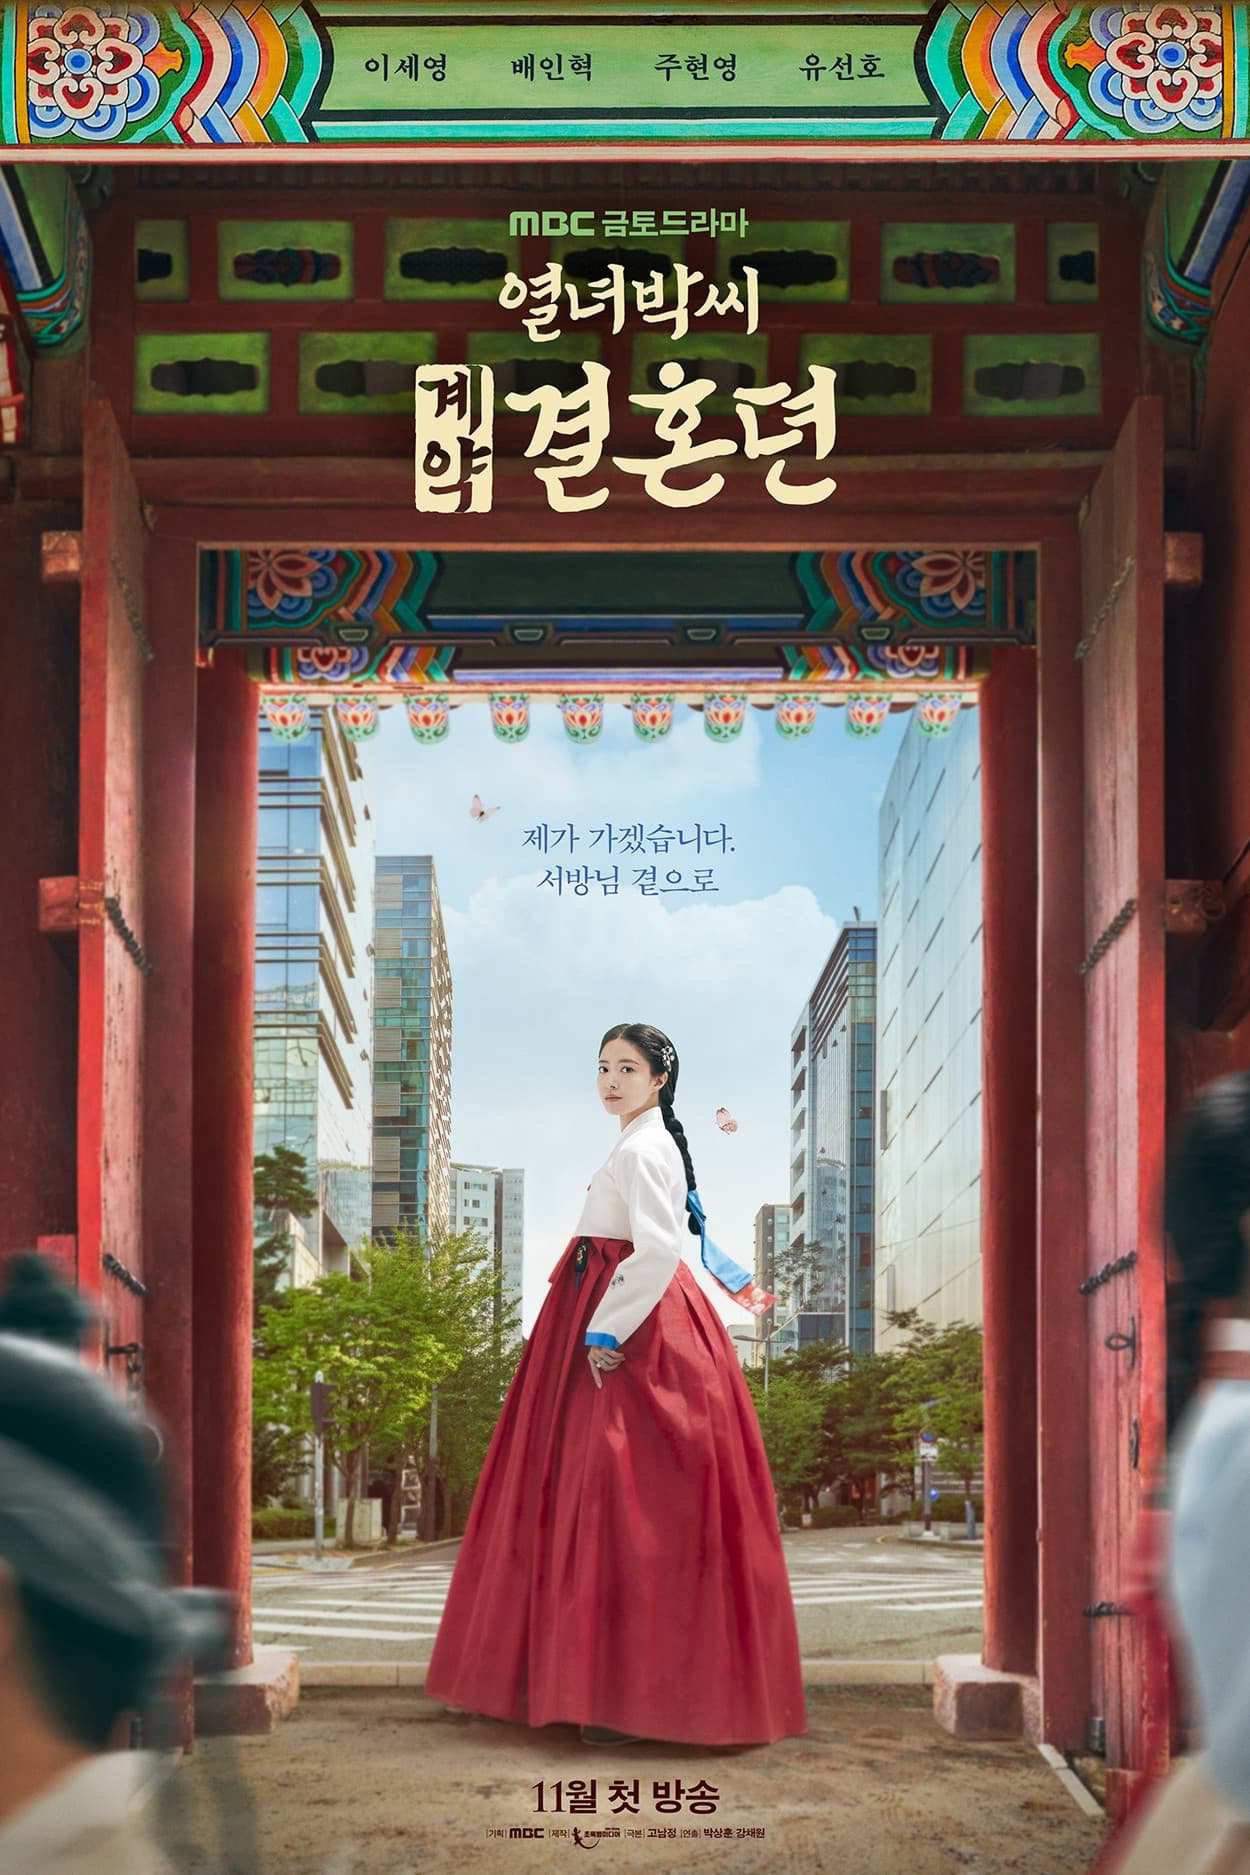 Xem Phim Hợp Đồng Hôn Nhân (The Story of Park's Marriage Contract)